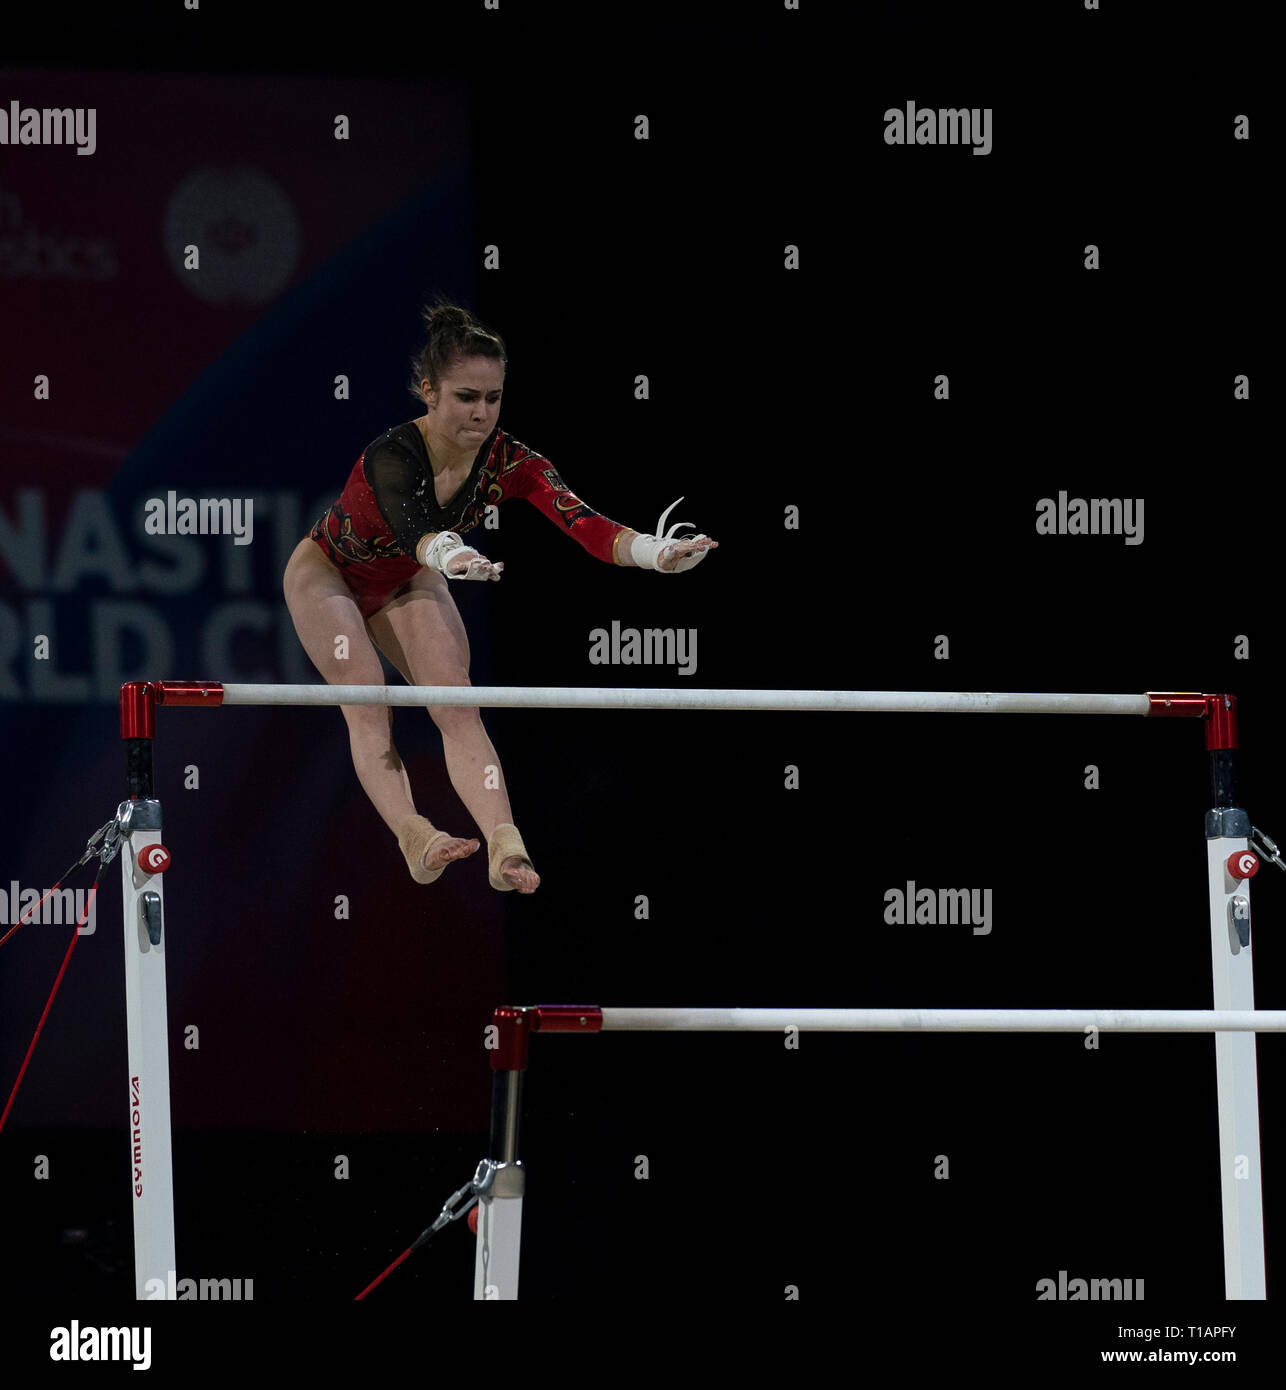 L'aliya Mustafina (Russie) vu en action lors de la Coupe du Monde de Gymnastique 2019 à Birmingham dans l'Arène de Genting. Banque D'Images